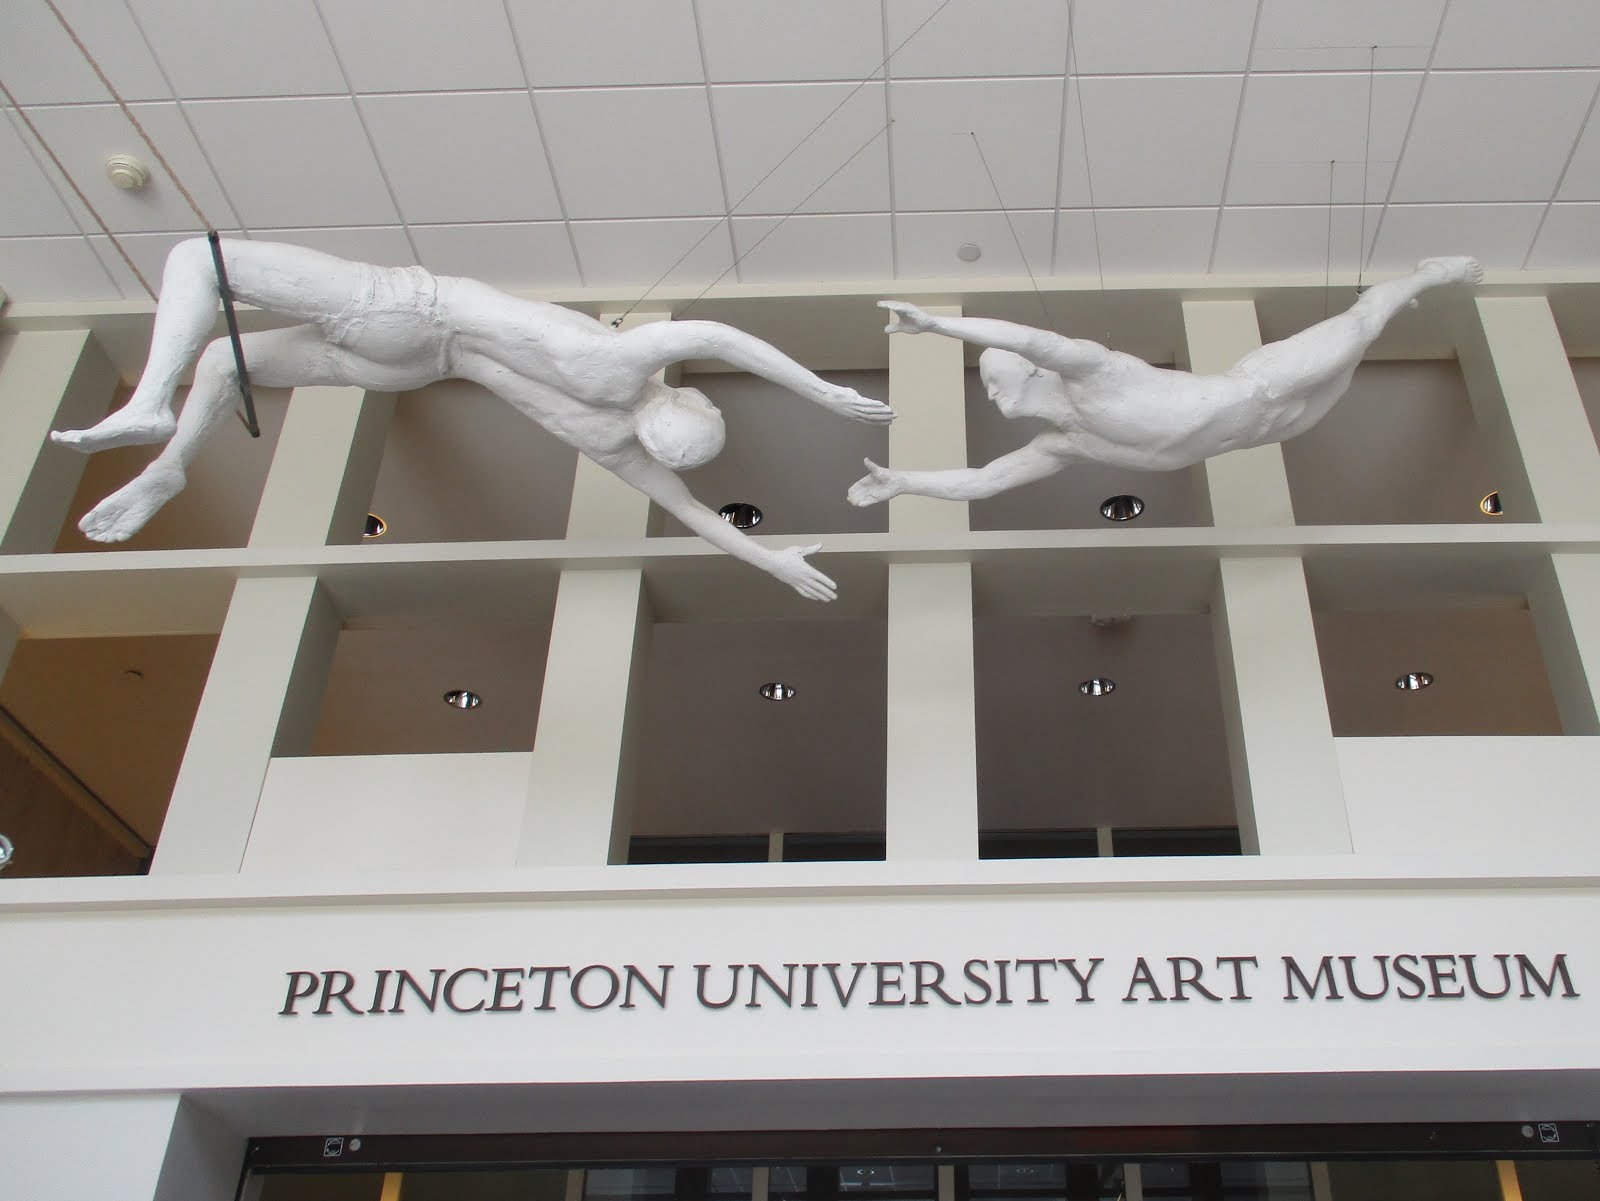 PRINCETON UNIVERSITY ART MUSEUM